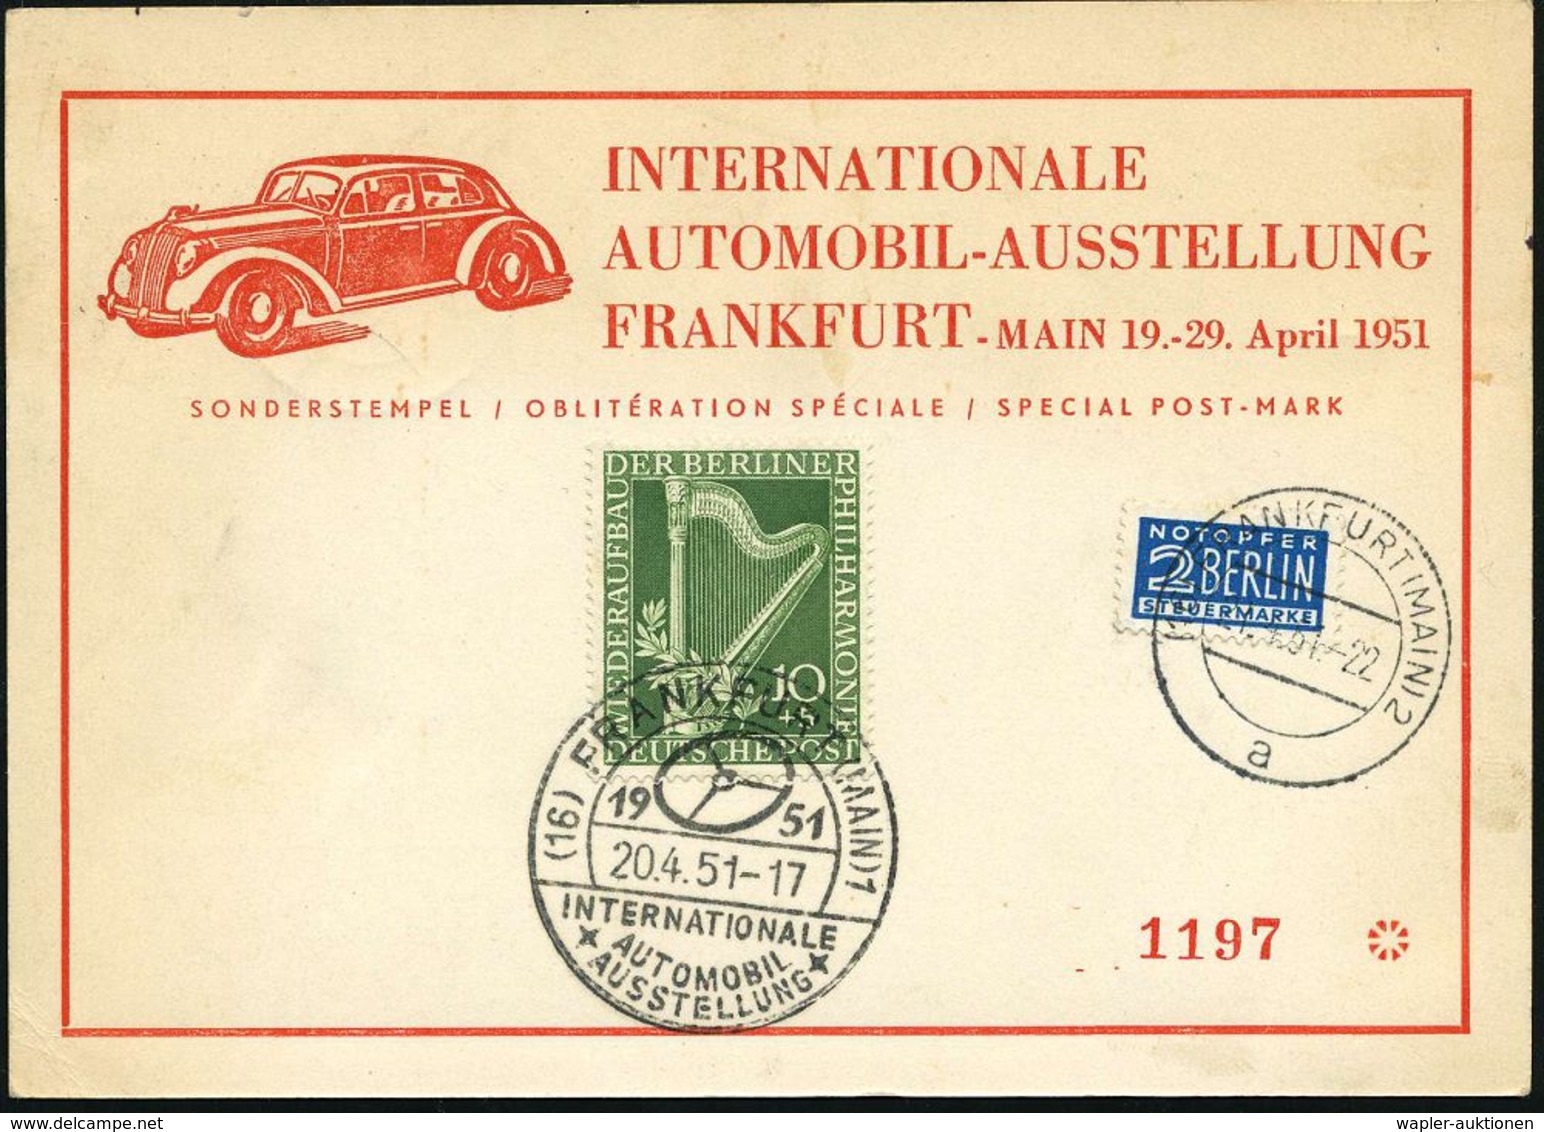 AUTO-, MOTORRAD-AUSSTELLUNGEN : (16) FRANKFURT (MAIN)1/ INT./ AUTOMOBIL-/ AUSSTELLUNG 1951 (23.4.) SSt (PKW-Steuerrad) K - Voitures